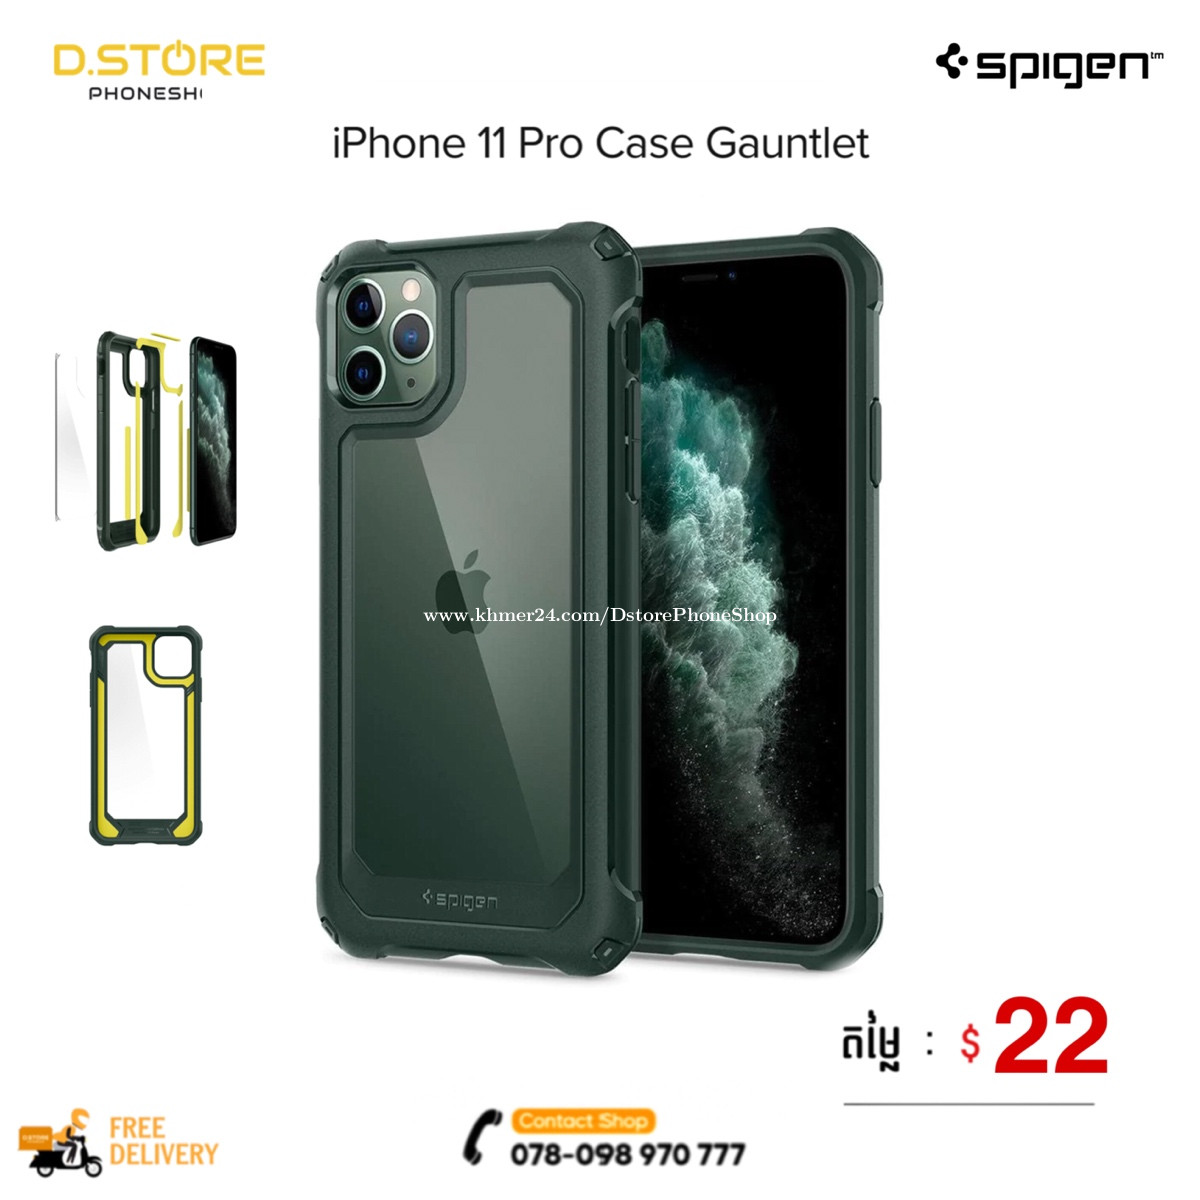 Spigen iPhone 11 Pro Max - Gauntlet (Green/Black) price $22.00 in